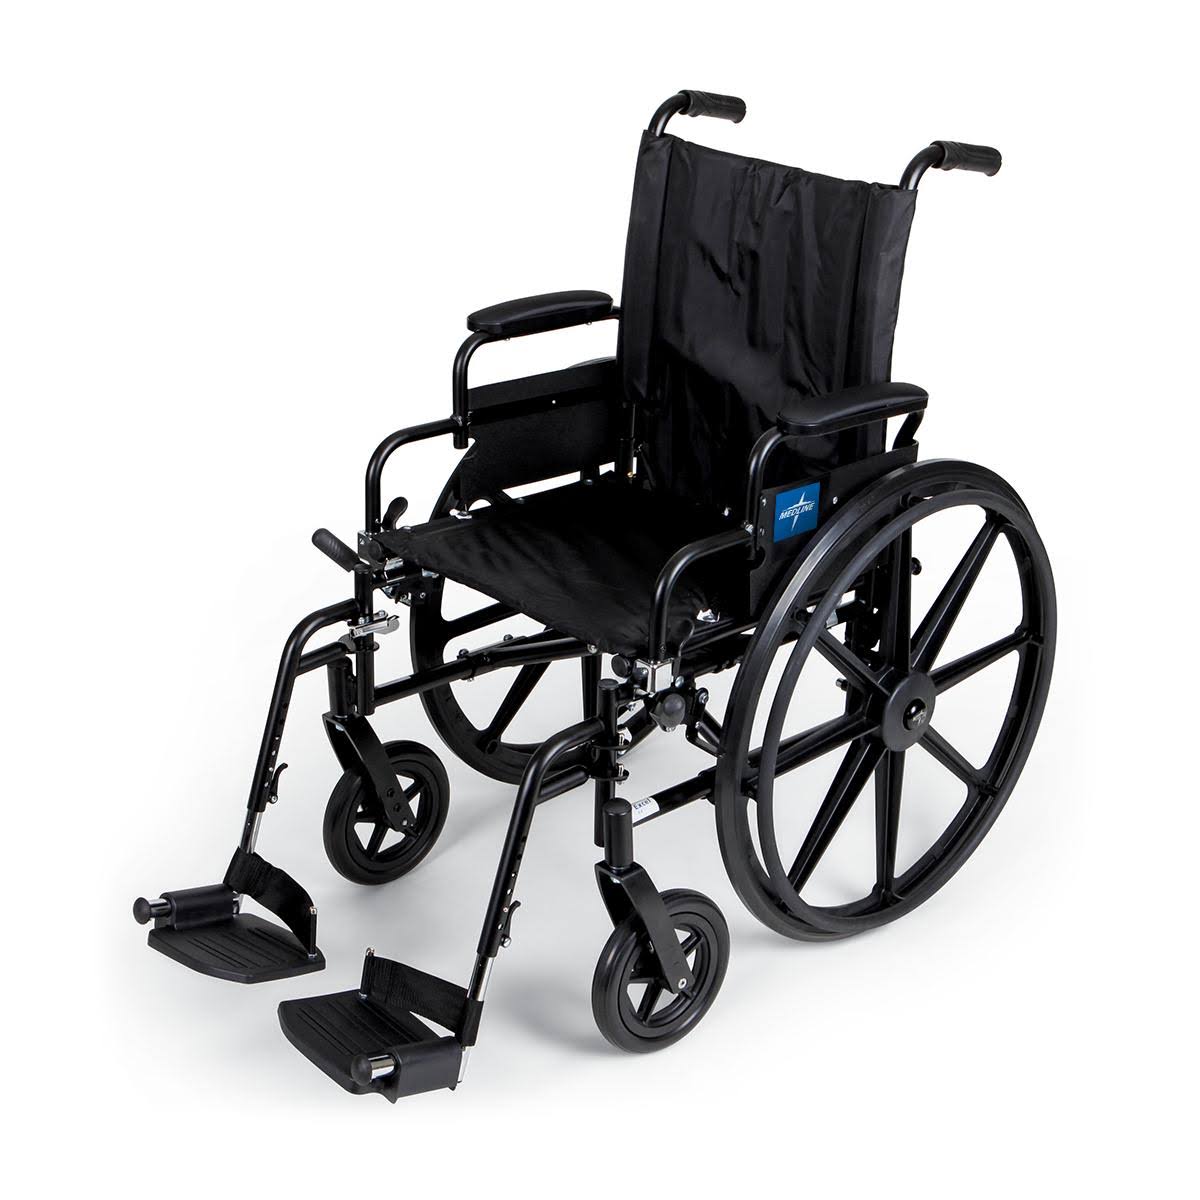 Medline Lightweight Wheelchair Model K4 - X-Wide, 22 Inch Seat, Black